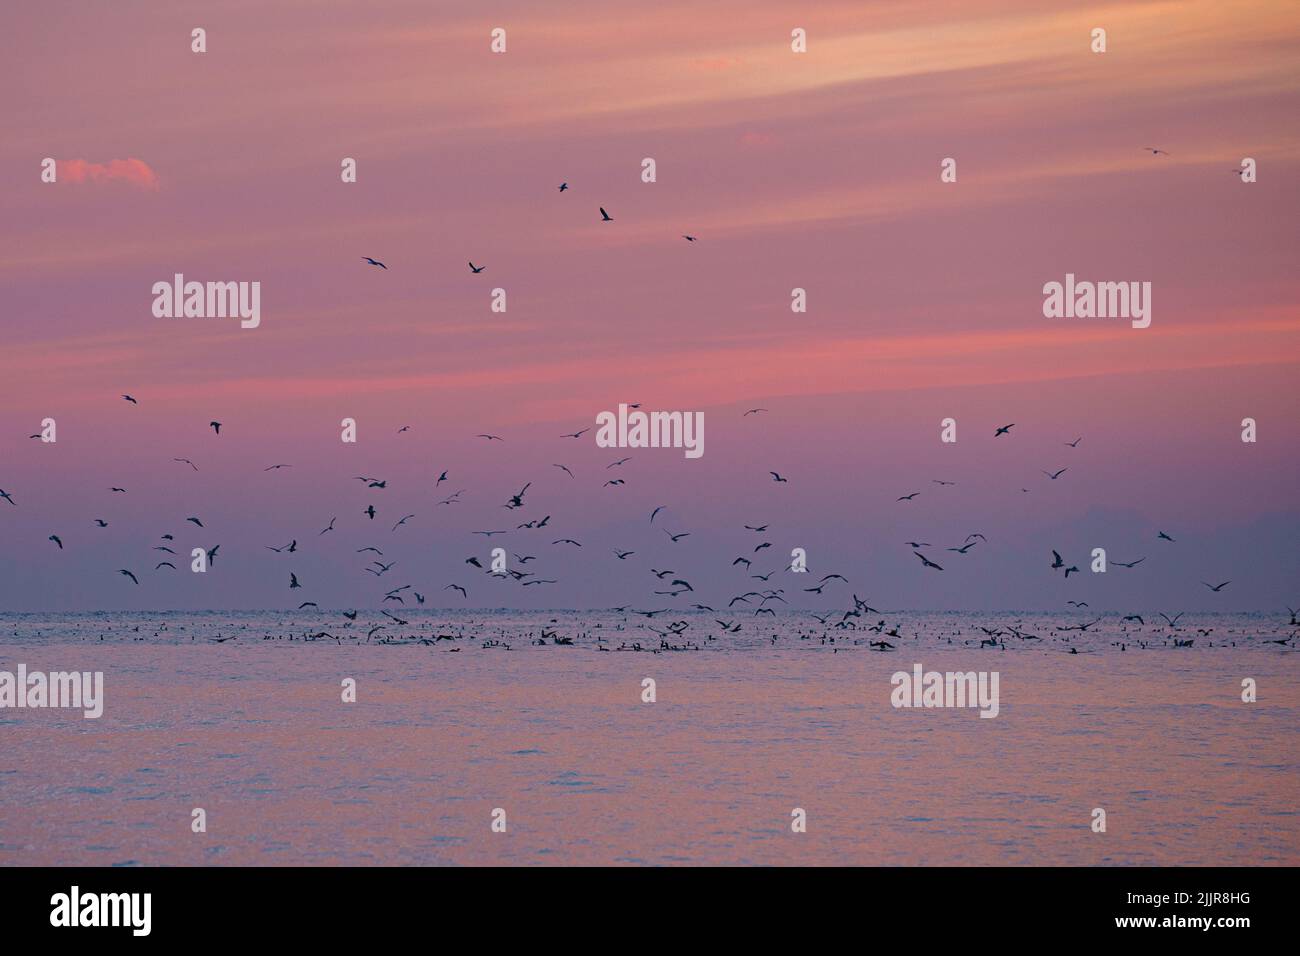 Une belle vue d'un troupeau d'oiseaux volant au-dessus de la mer pendant le coucher de soleil rose Banque D'Images